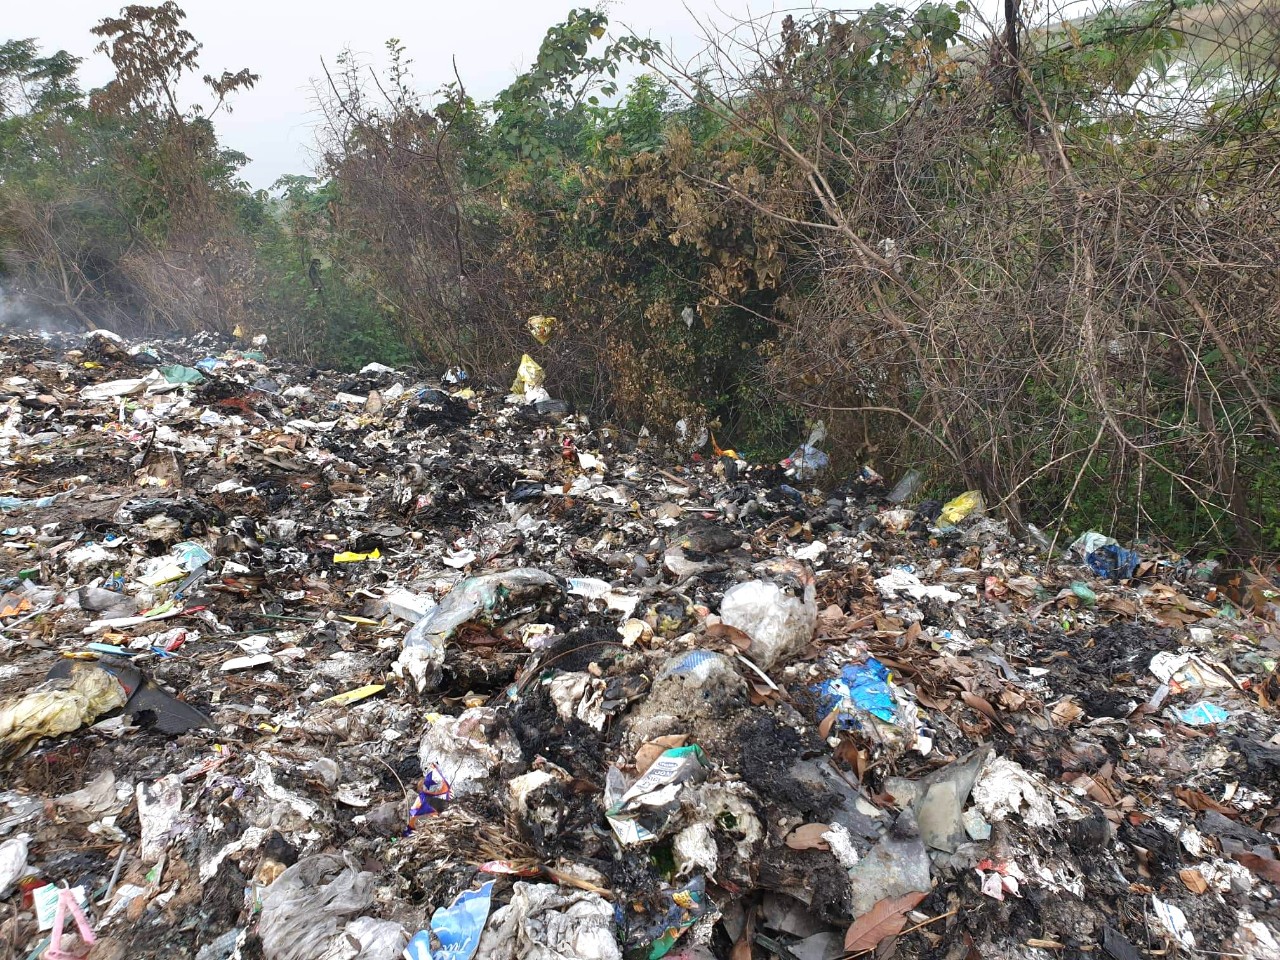 Rác thải nhựa: Tình trạng nhựa rác đang trở thành một vấn đề nghiêm trọng trên toàn cầu. Hãy xem hình ảnh liên quan để hiểu thêm về tình hình này và cách chúng ta có thể giúp giảm thiểu rác thải nhựa và bảo vệ môi trường.